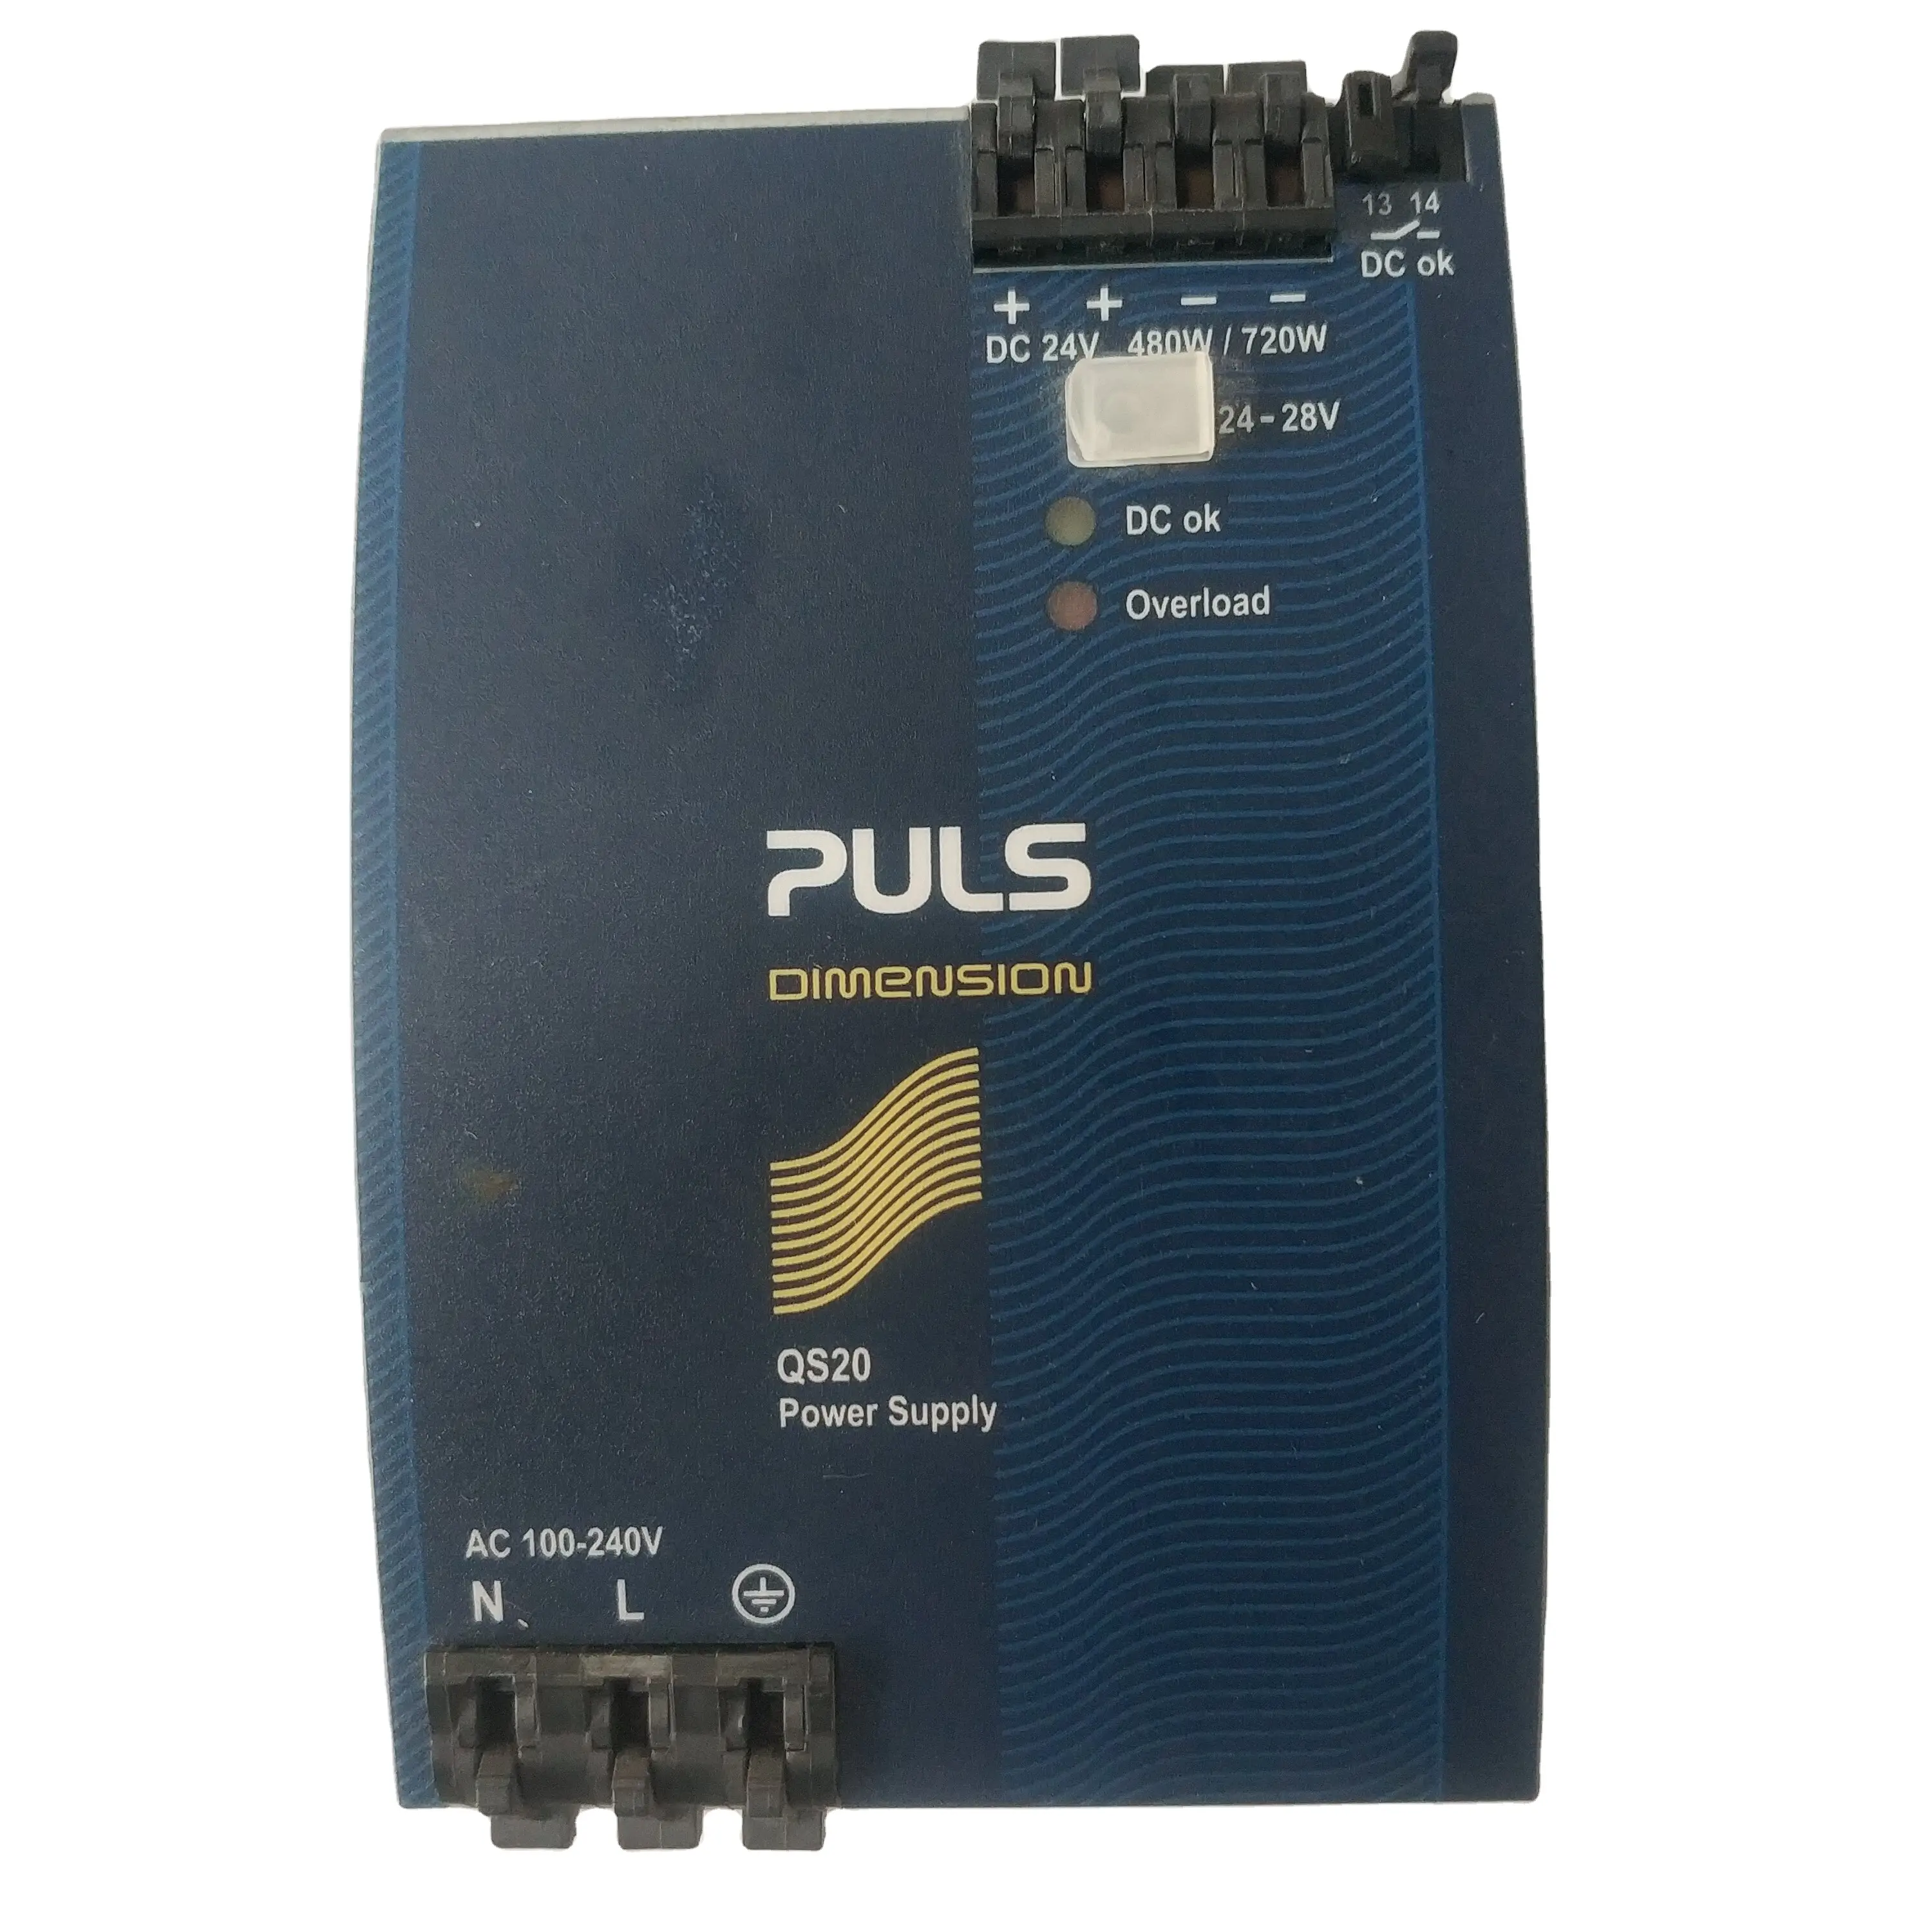 원래 CD102 PULS 치수 Q 스위치 모드 DIN 레일 전원 공급 장치 PULS QS20.241 하이델버그 기계 BM2303142 용